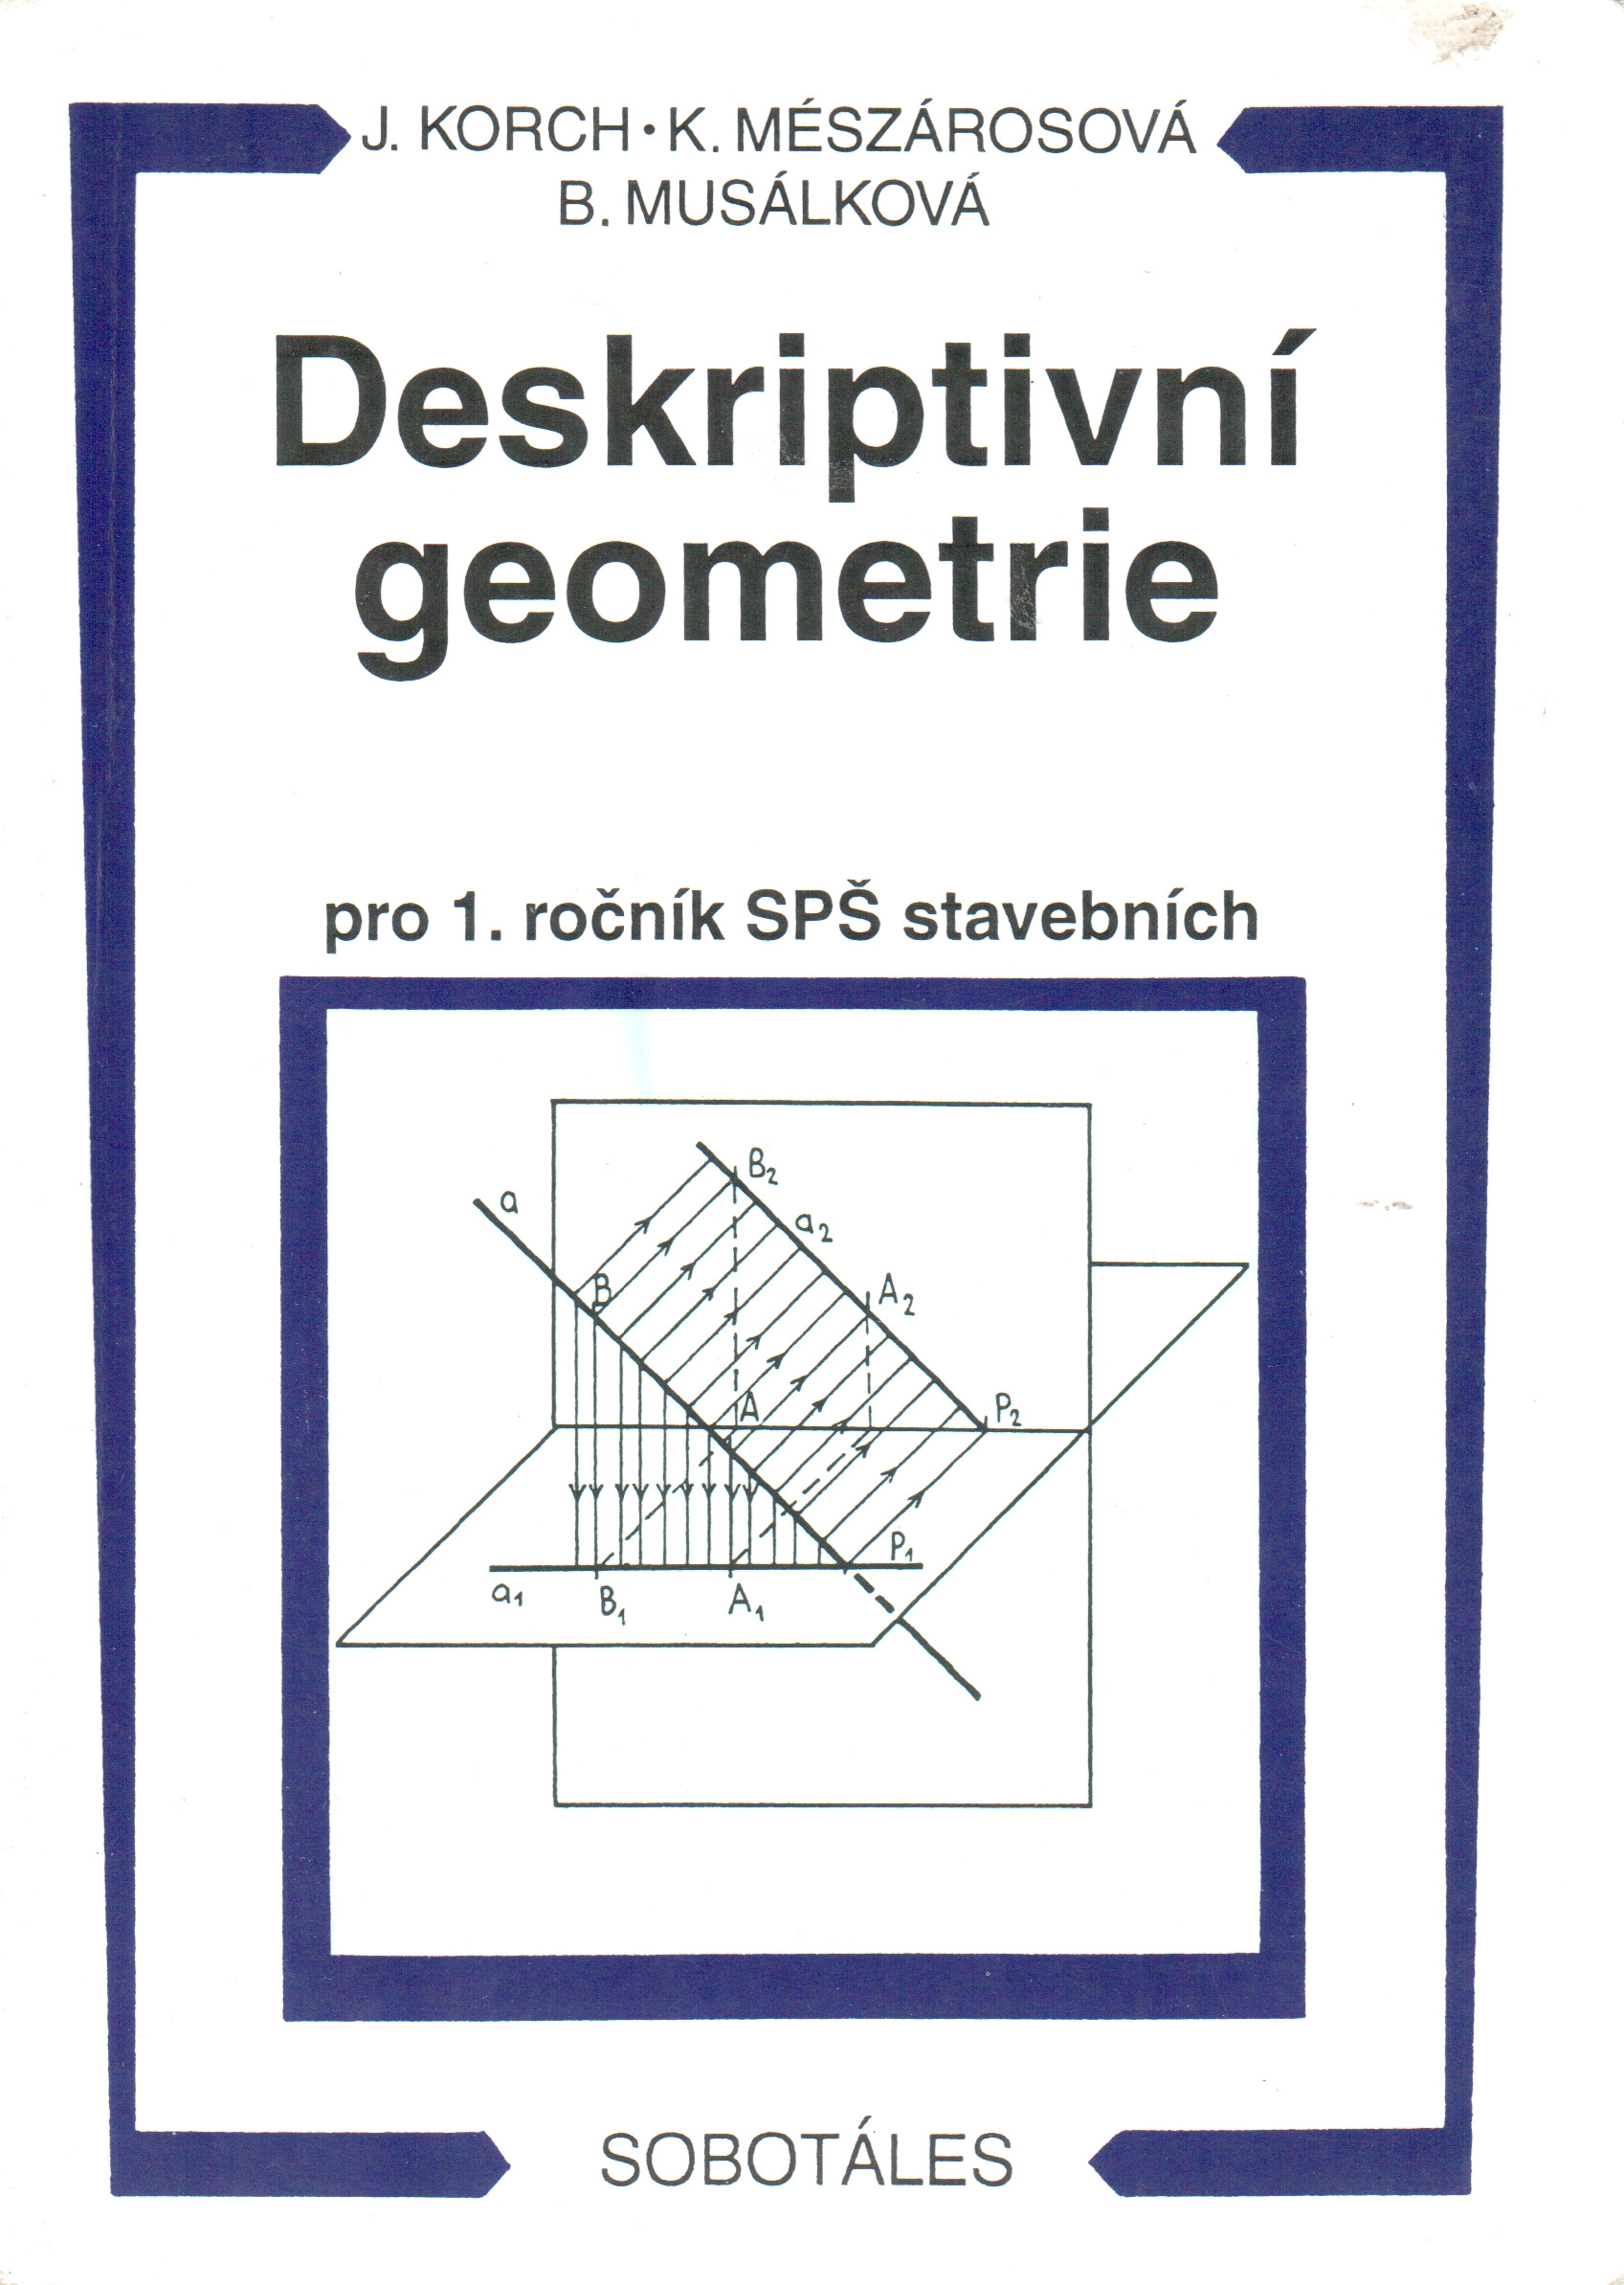 Deskriptivní geometrie pro 1. ročník SPŠ stavebních - Náhled učebnice